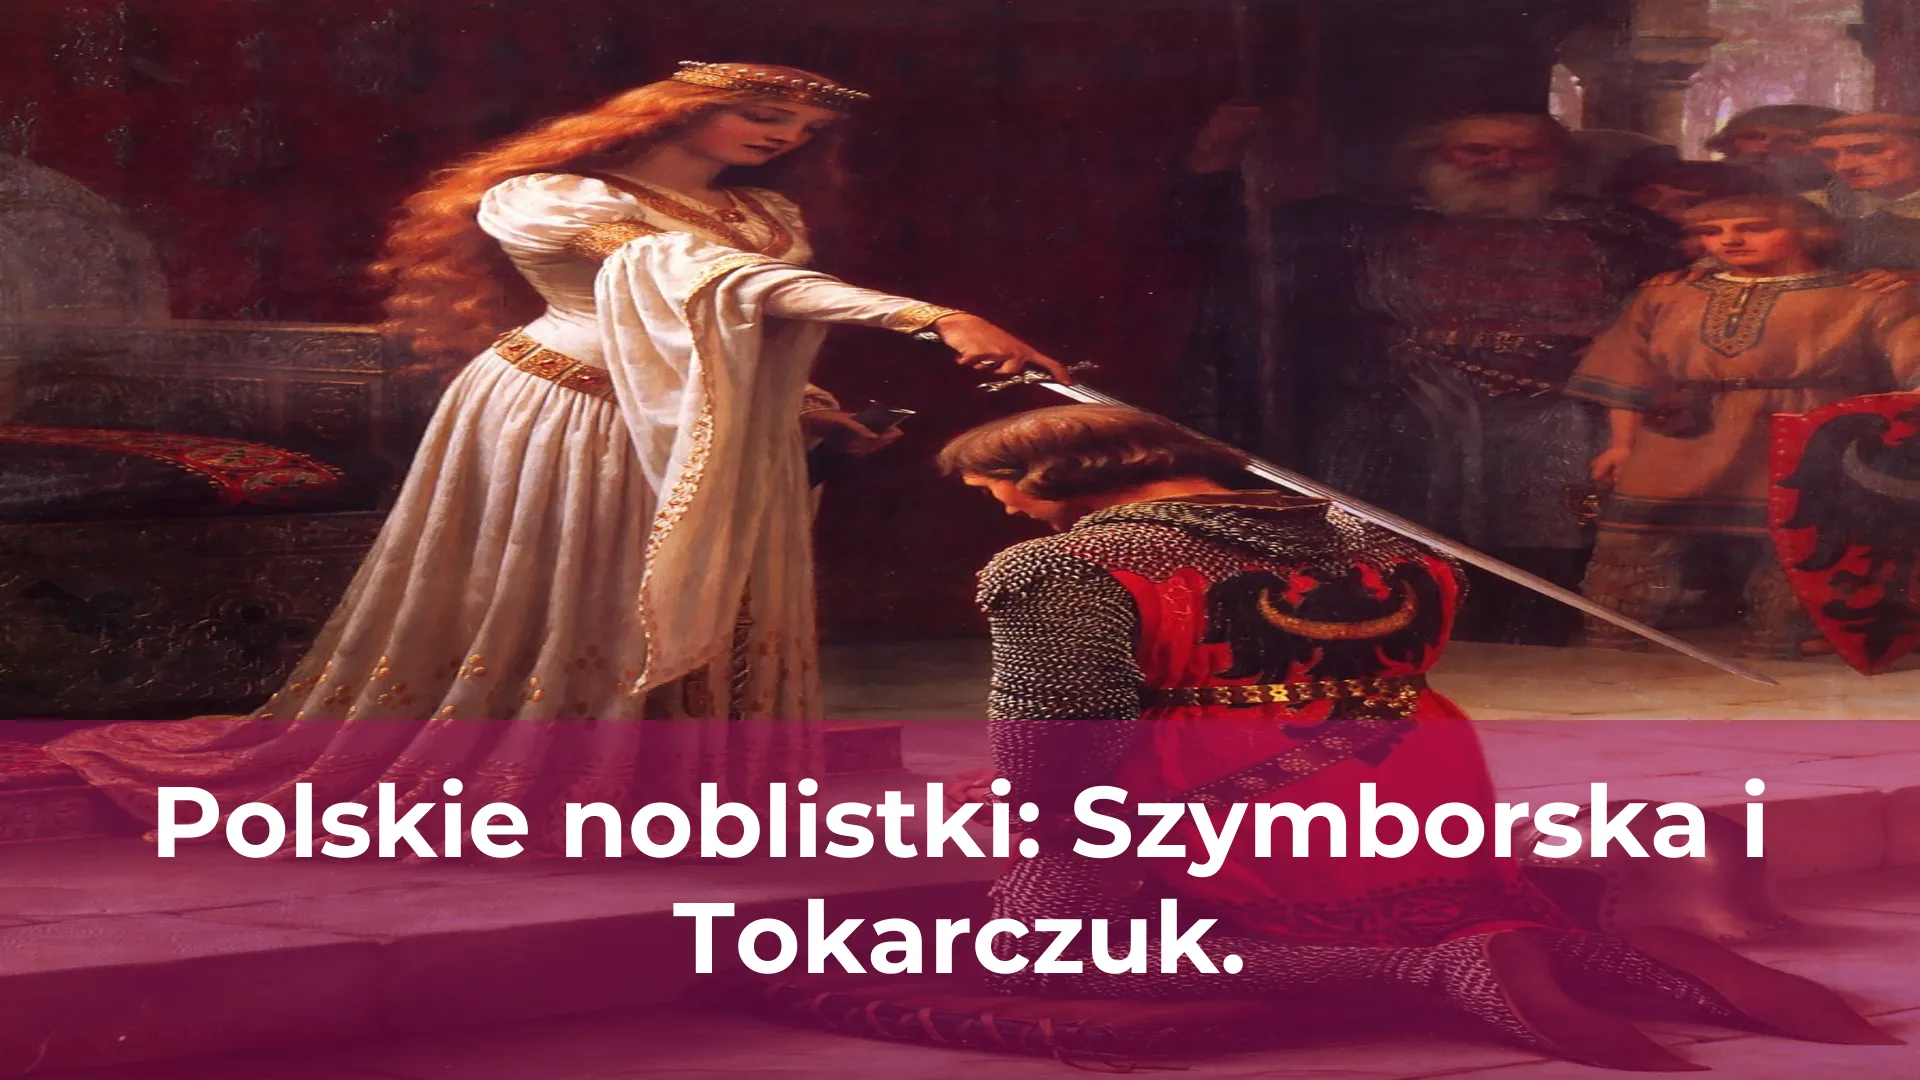 Polskie noblistki szymborska i tokarczuk